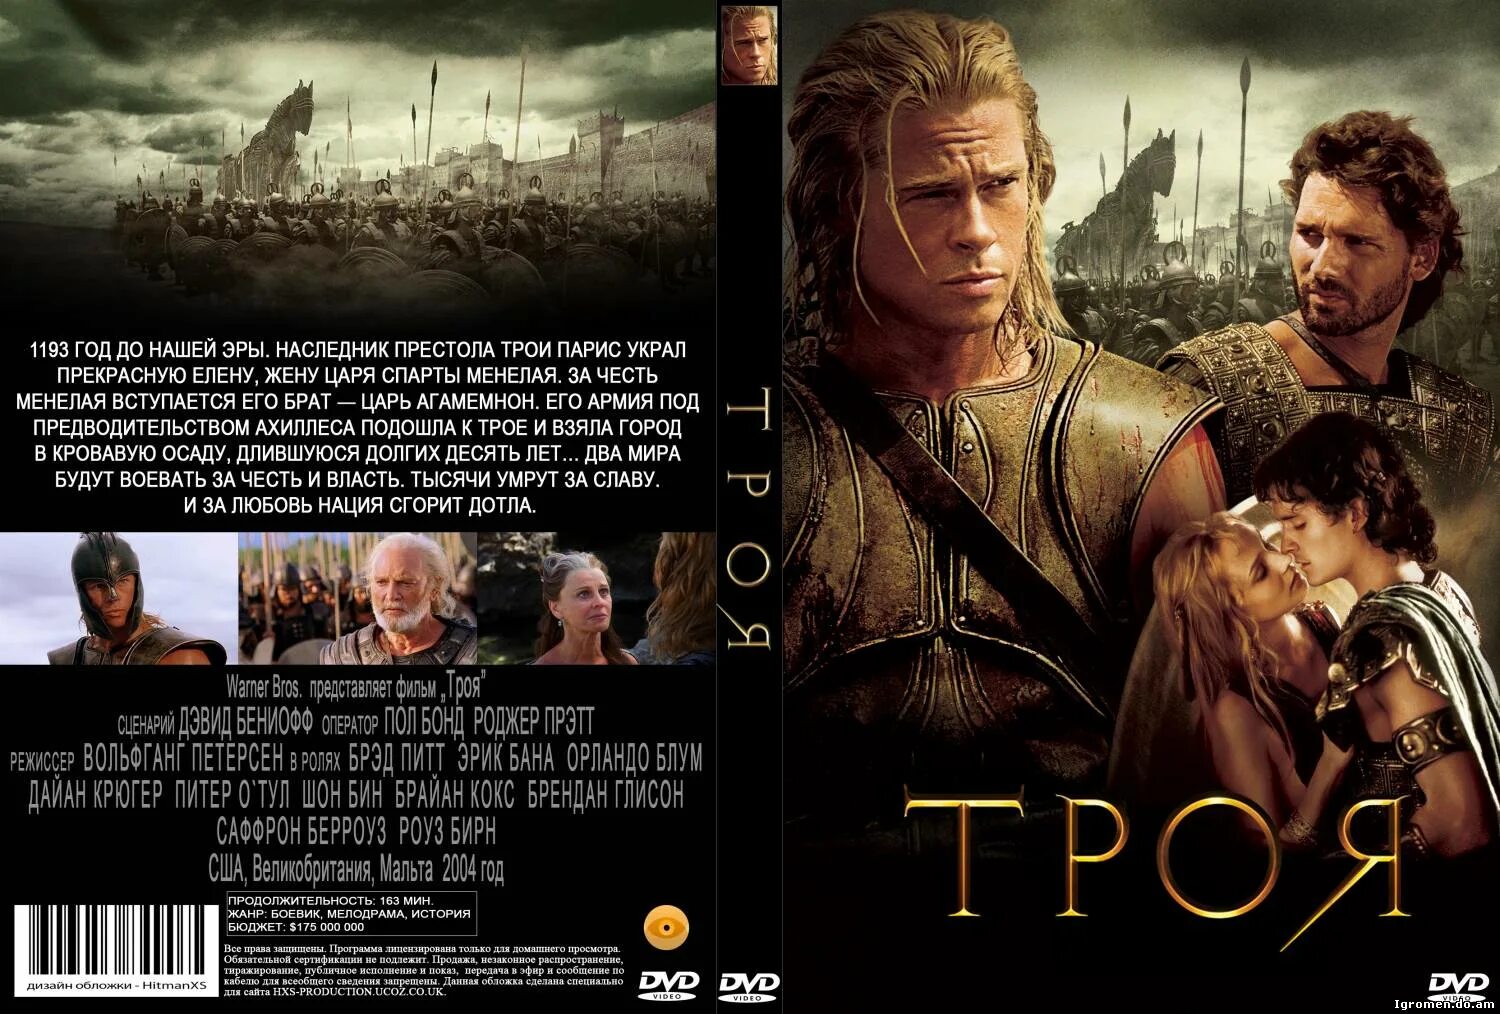 Троя качество. Троя обложка фильма. Троя фильм 2004 Постер. Троя 2004 обложки фильма. Троя (2004) Blu ray Cover.